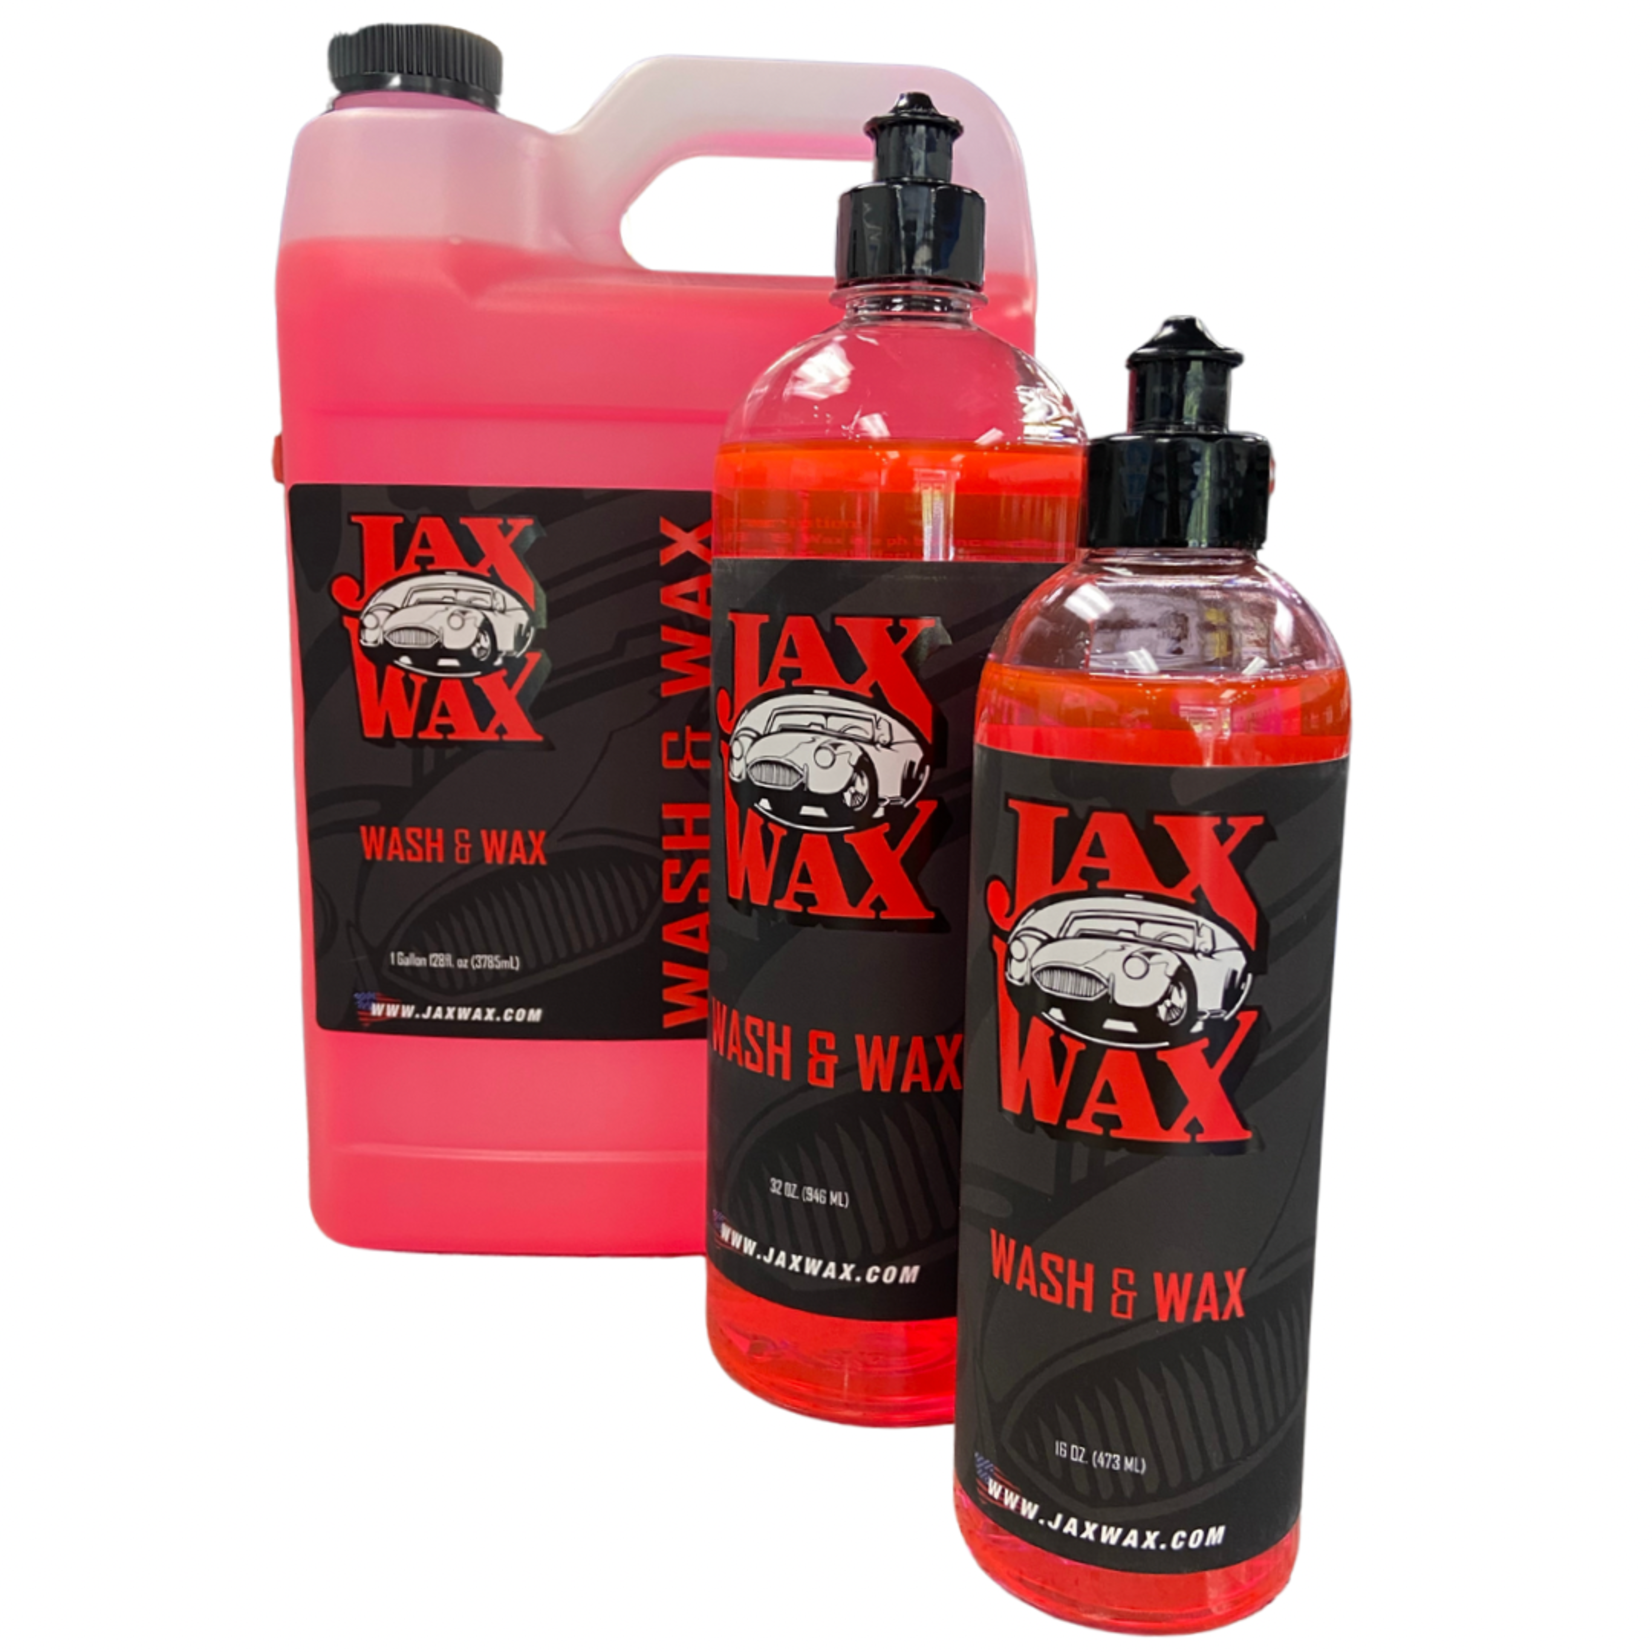 Jax Wax Kit